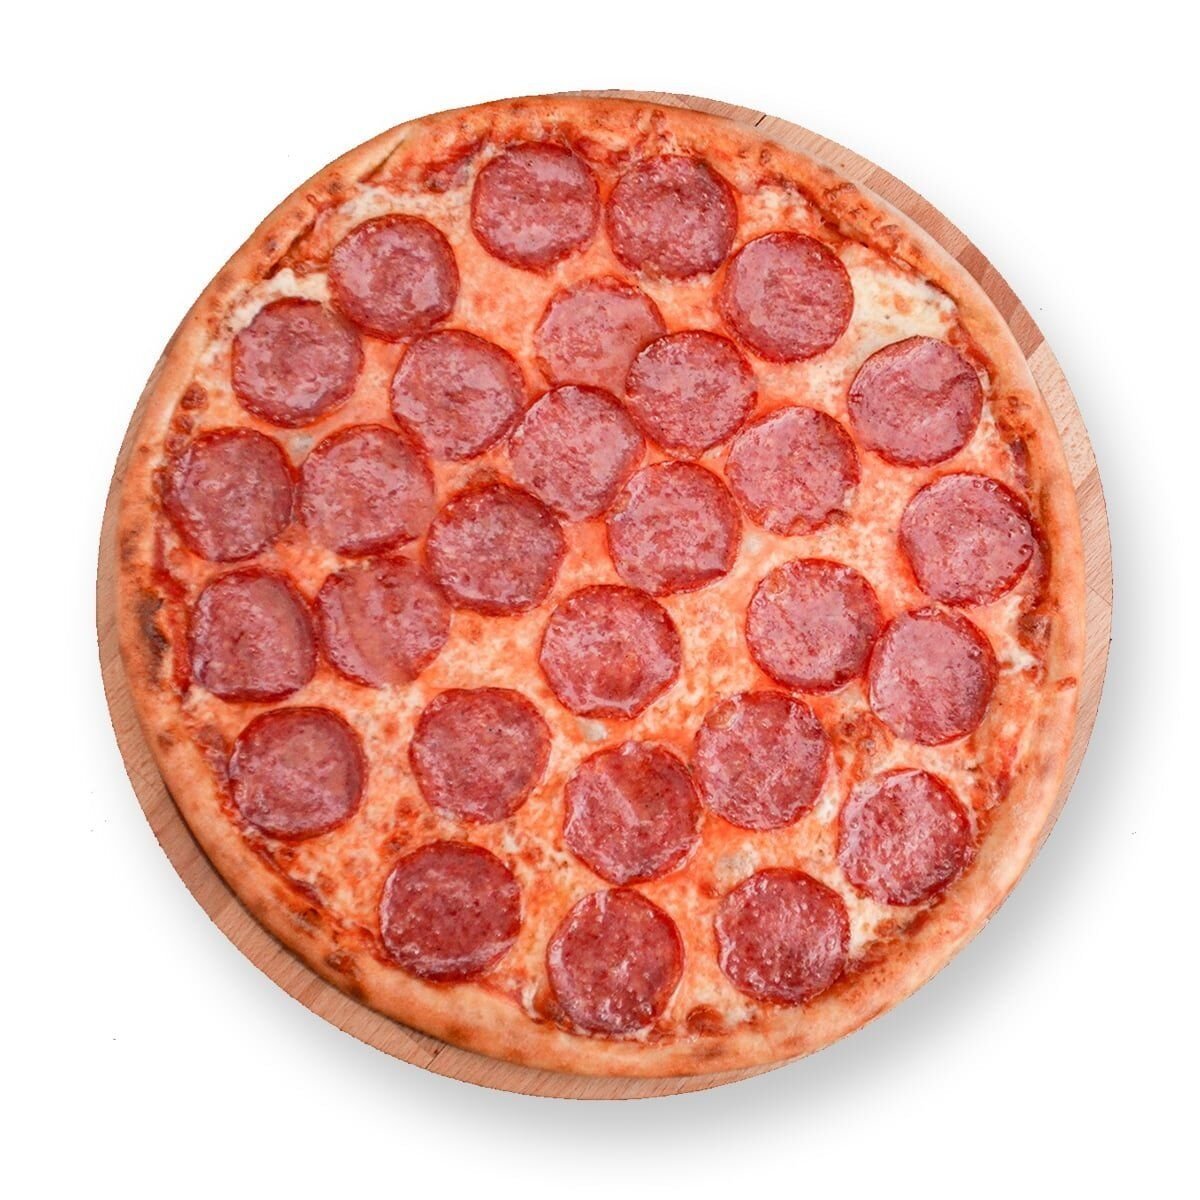 фото пиццы пепперони на столе фото 55